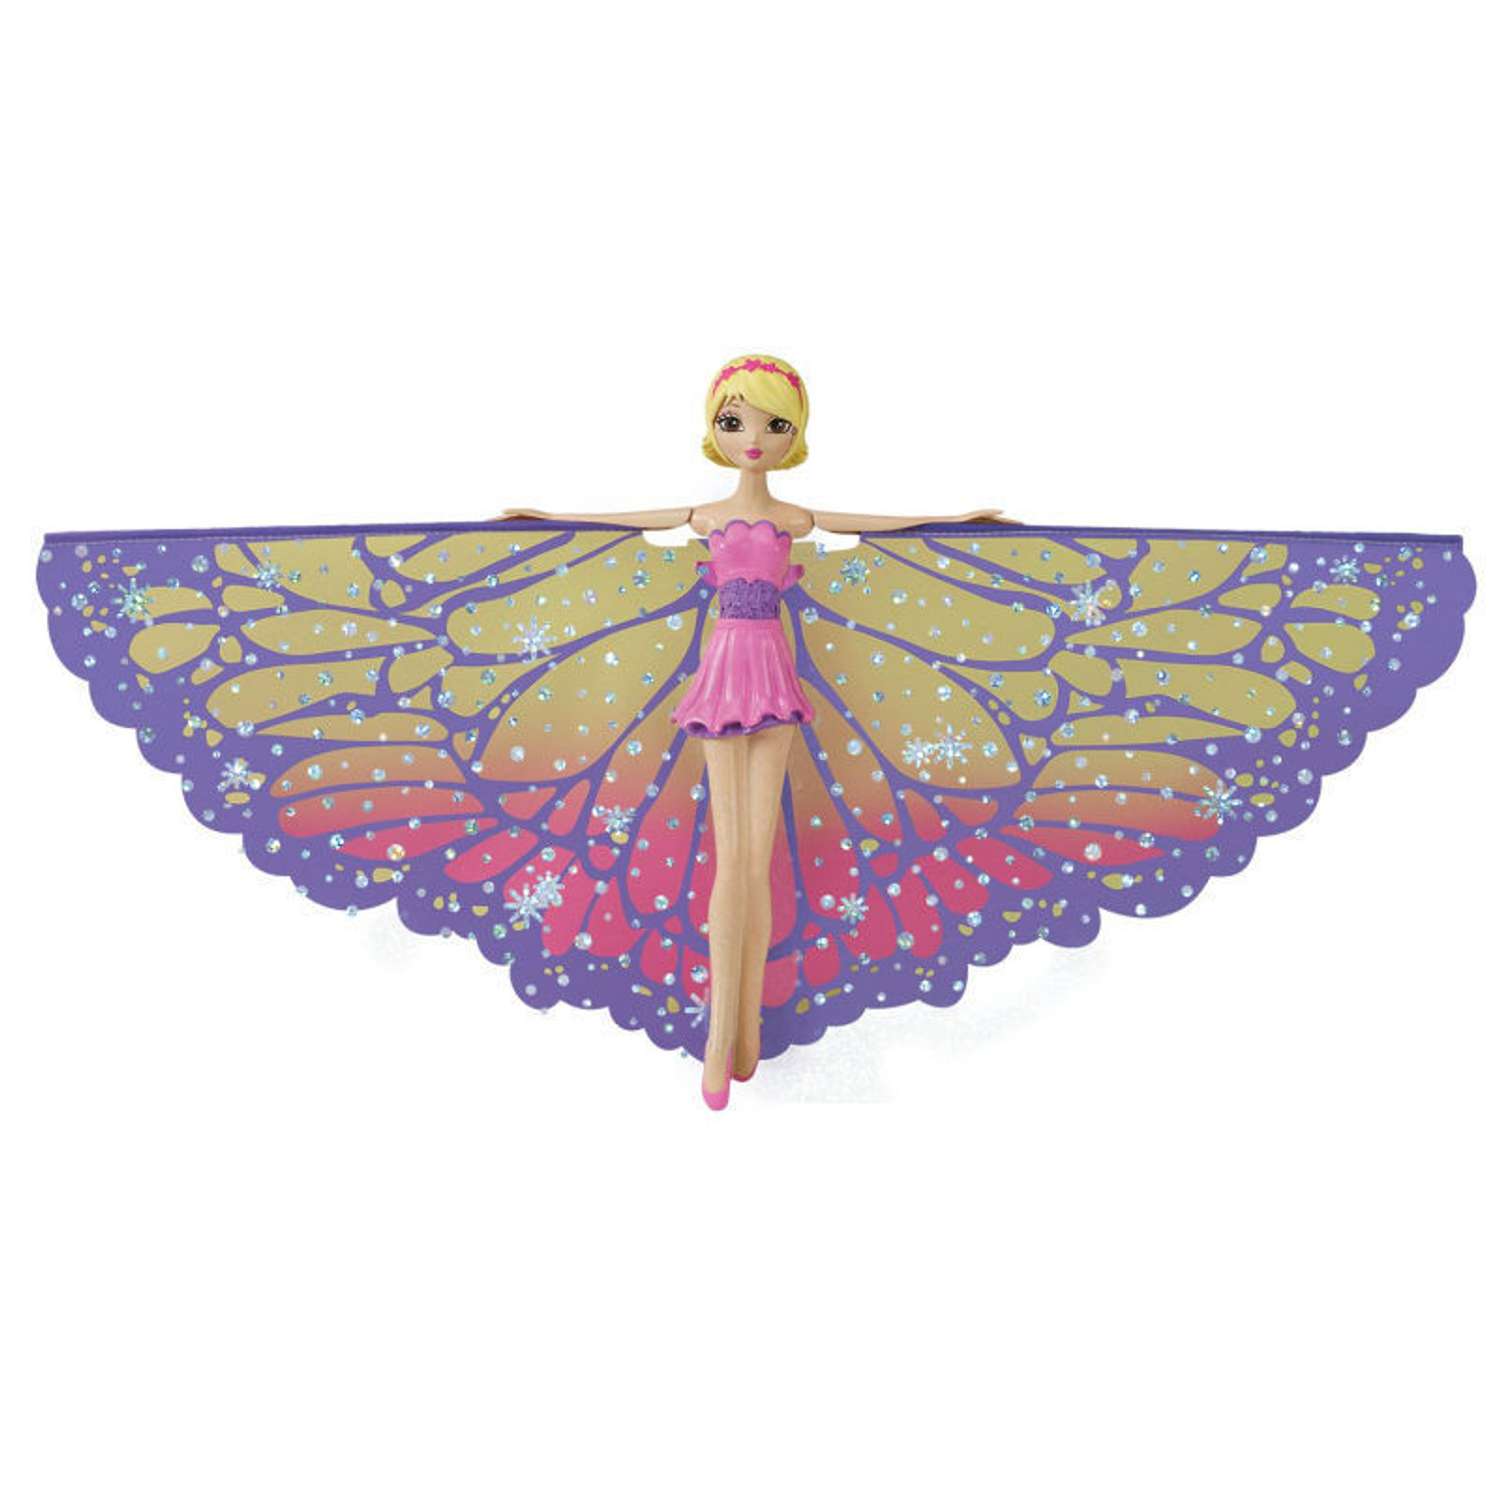 Сказочная фея Flying Fairy летит при запуске рукой в ассортименте 35817 - фото 2